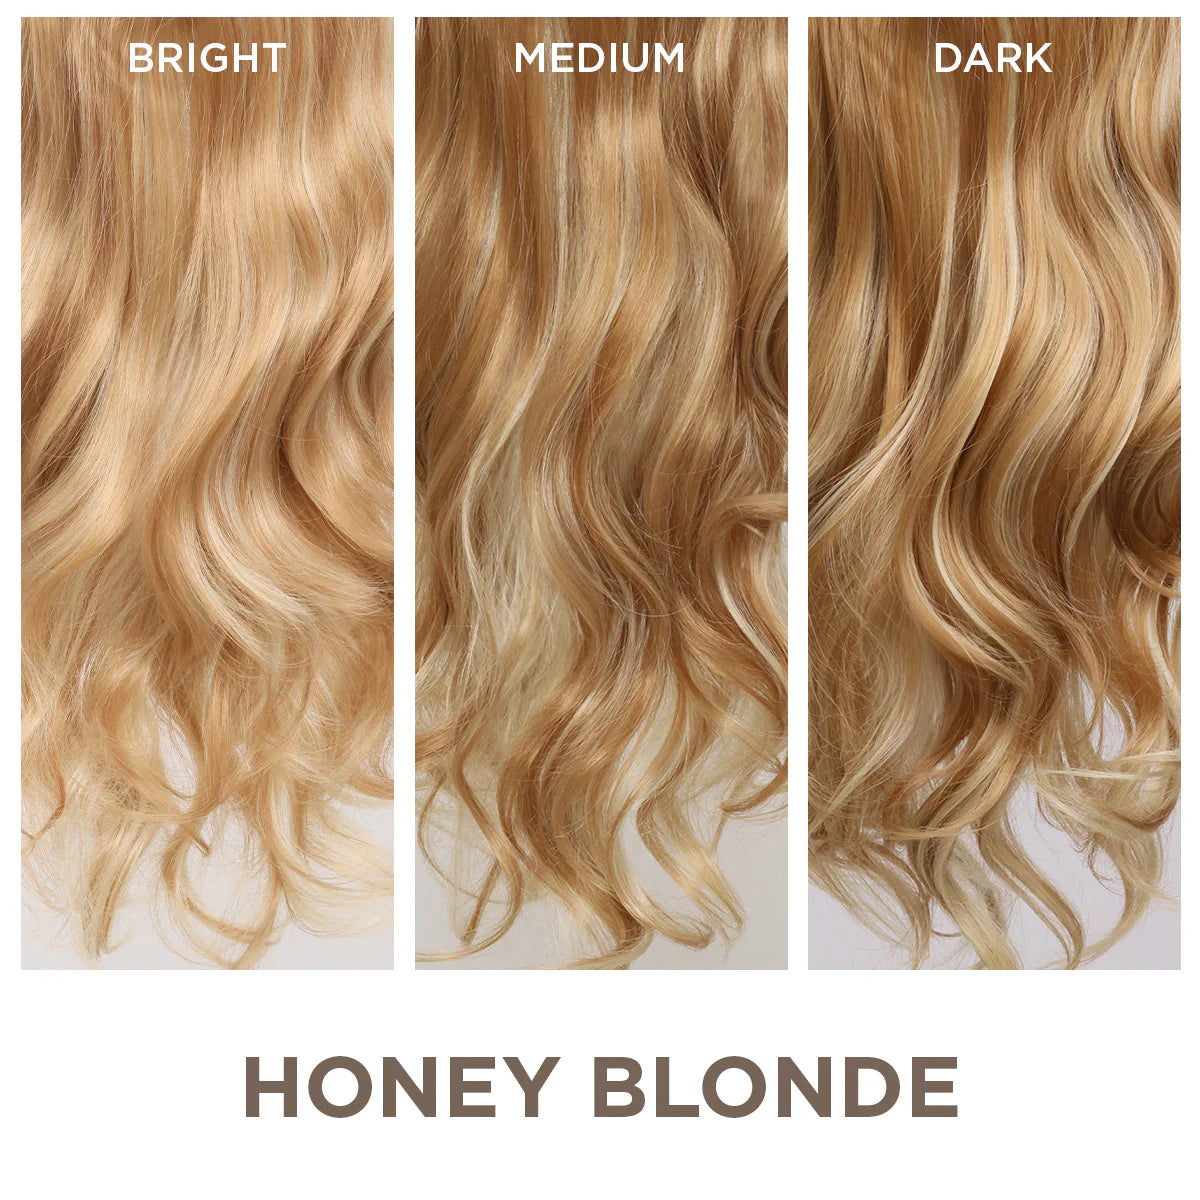 Honey Blonde + 1 FREE HALO